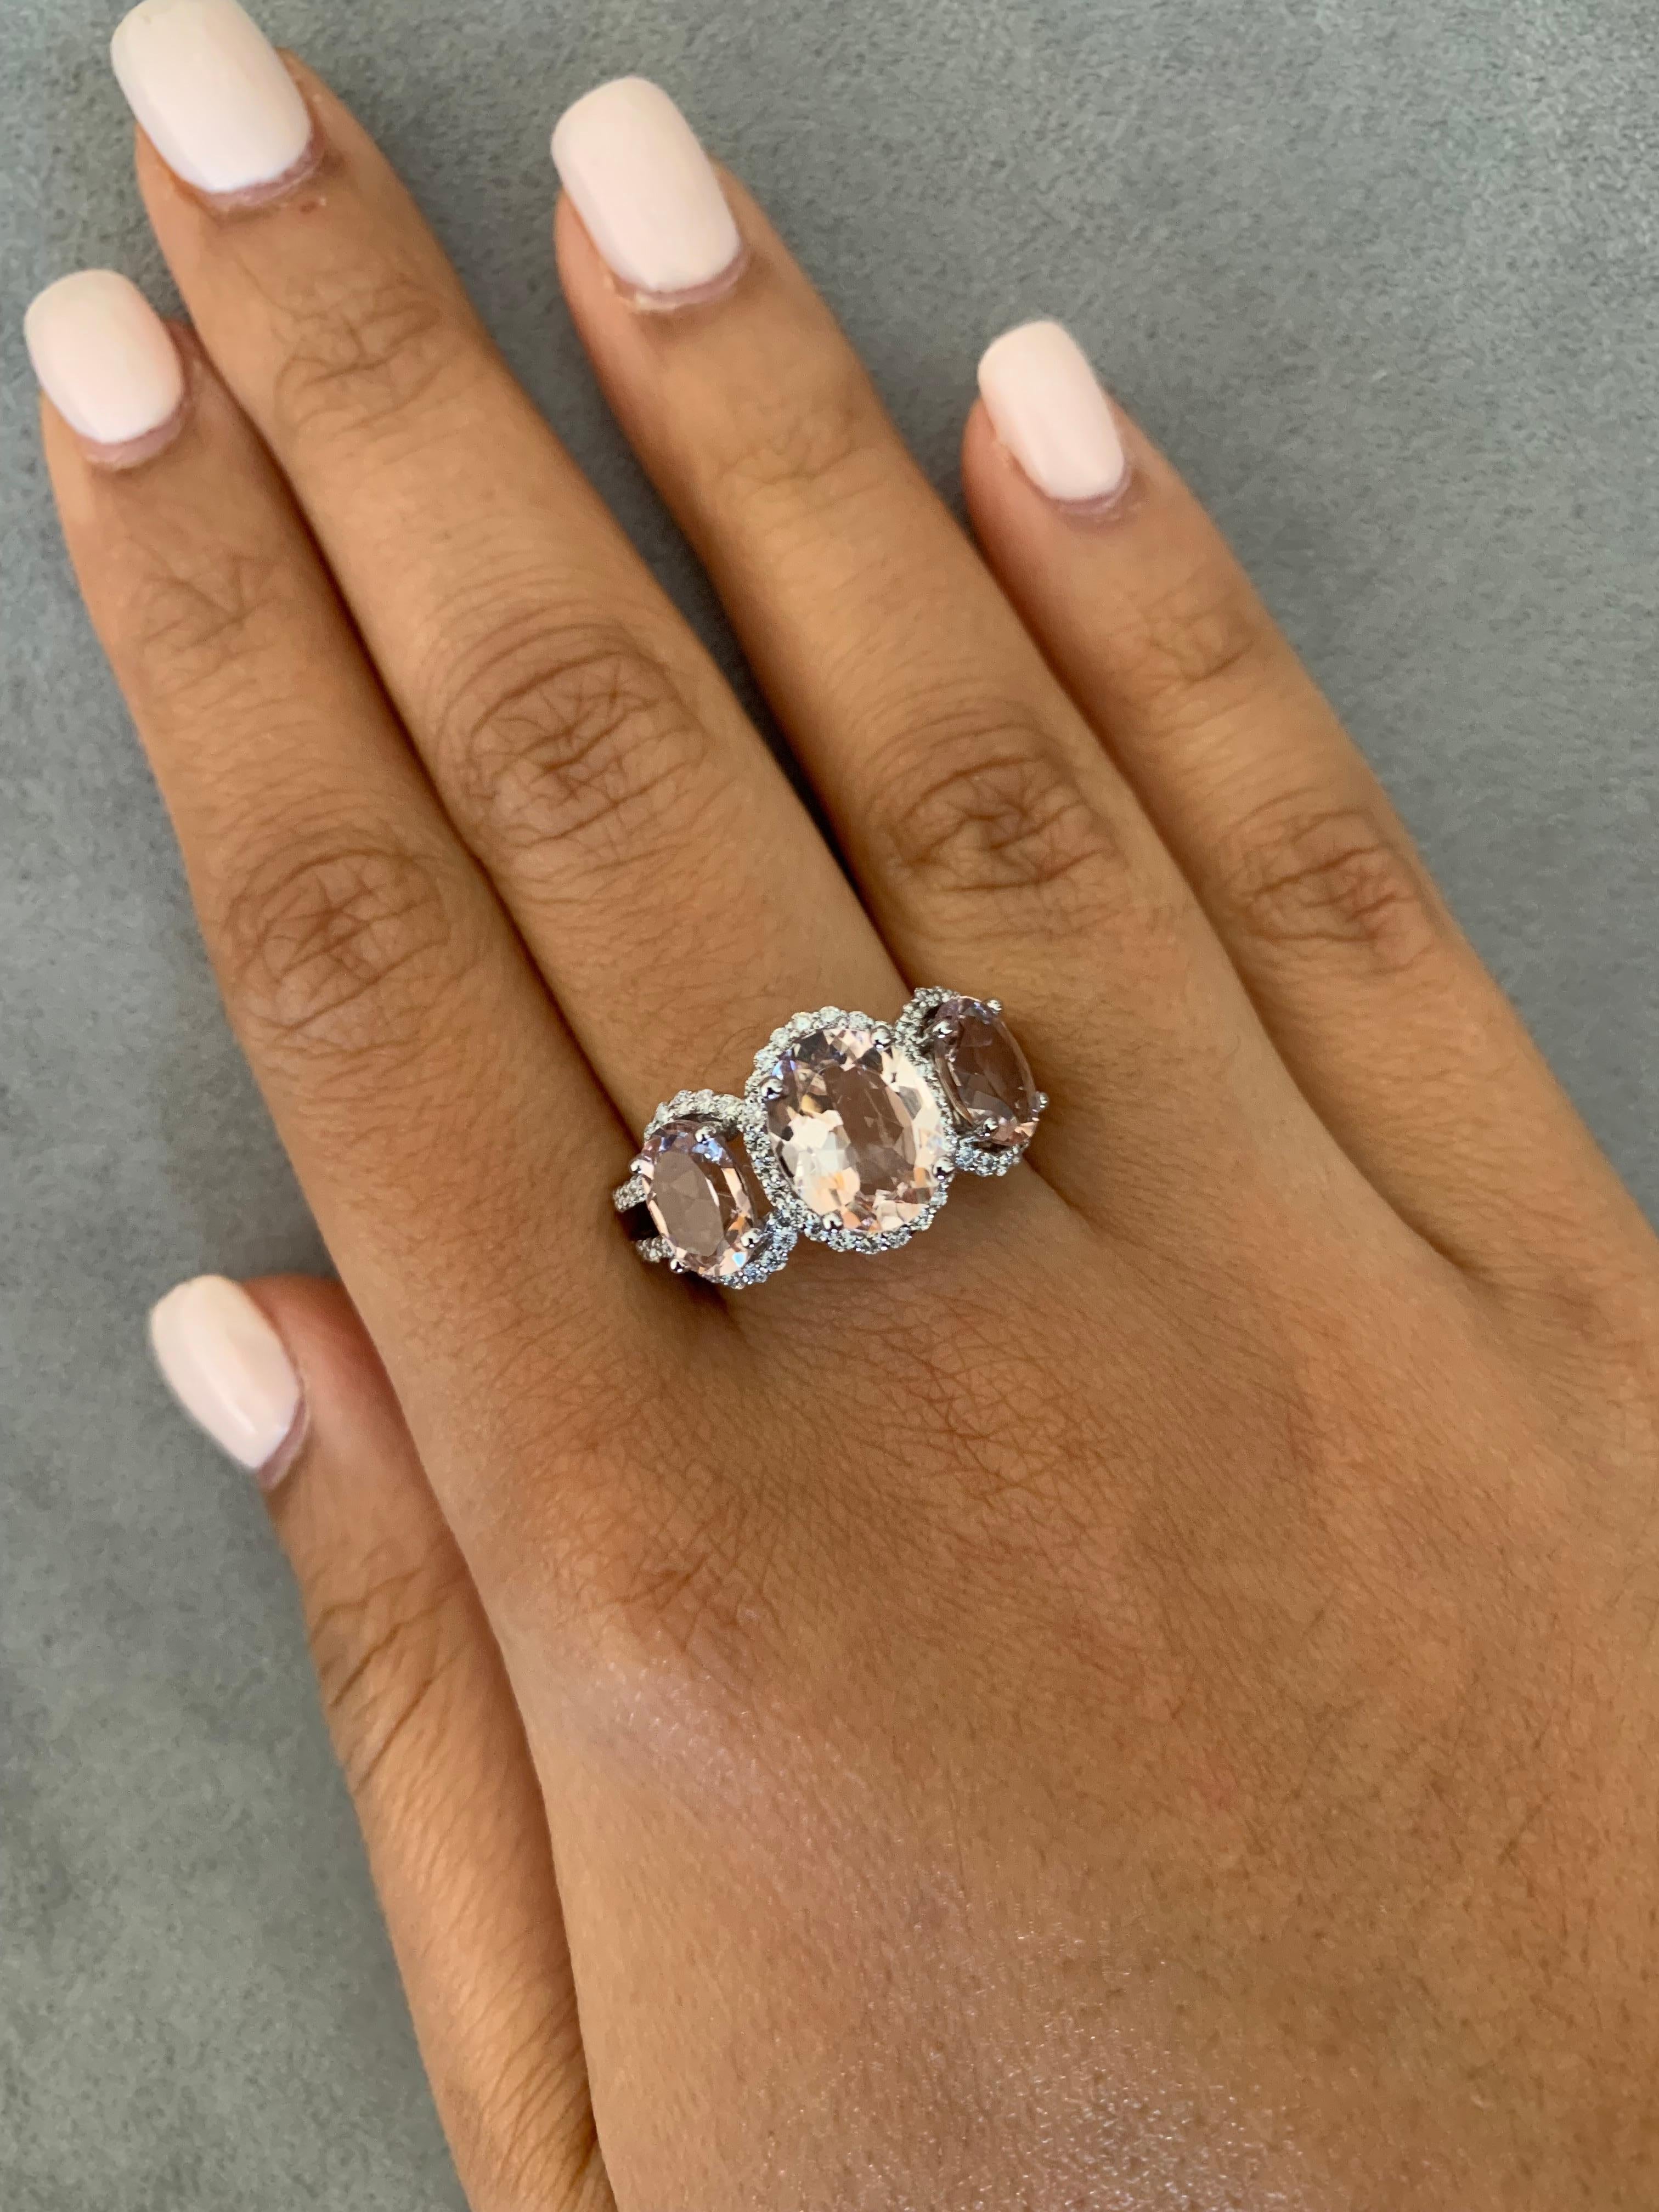 Diese Kollektion zeichnet sich durch eine Reihe von prächtigen Morganiten aus! Diese mit Diamanten akzentuierten Ringe sind aus Weißgold gefertigt und bieten einen klassischen und doch eleganten Look. 

Dreisteiniger morganitförmiger Ring aus 18